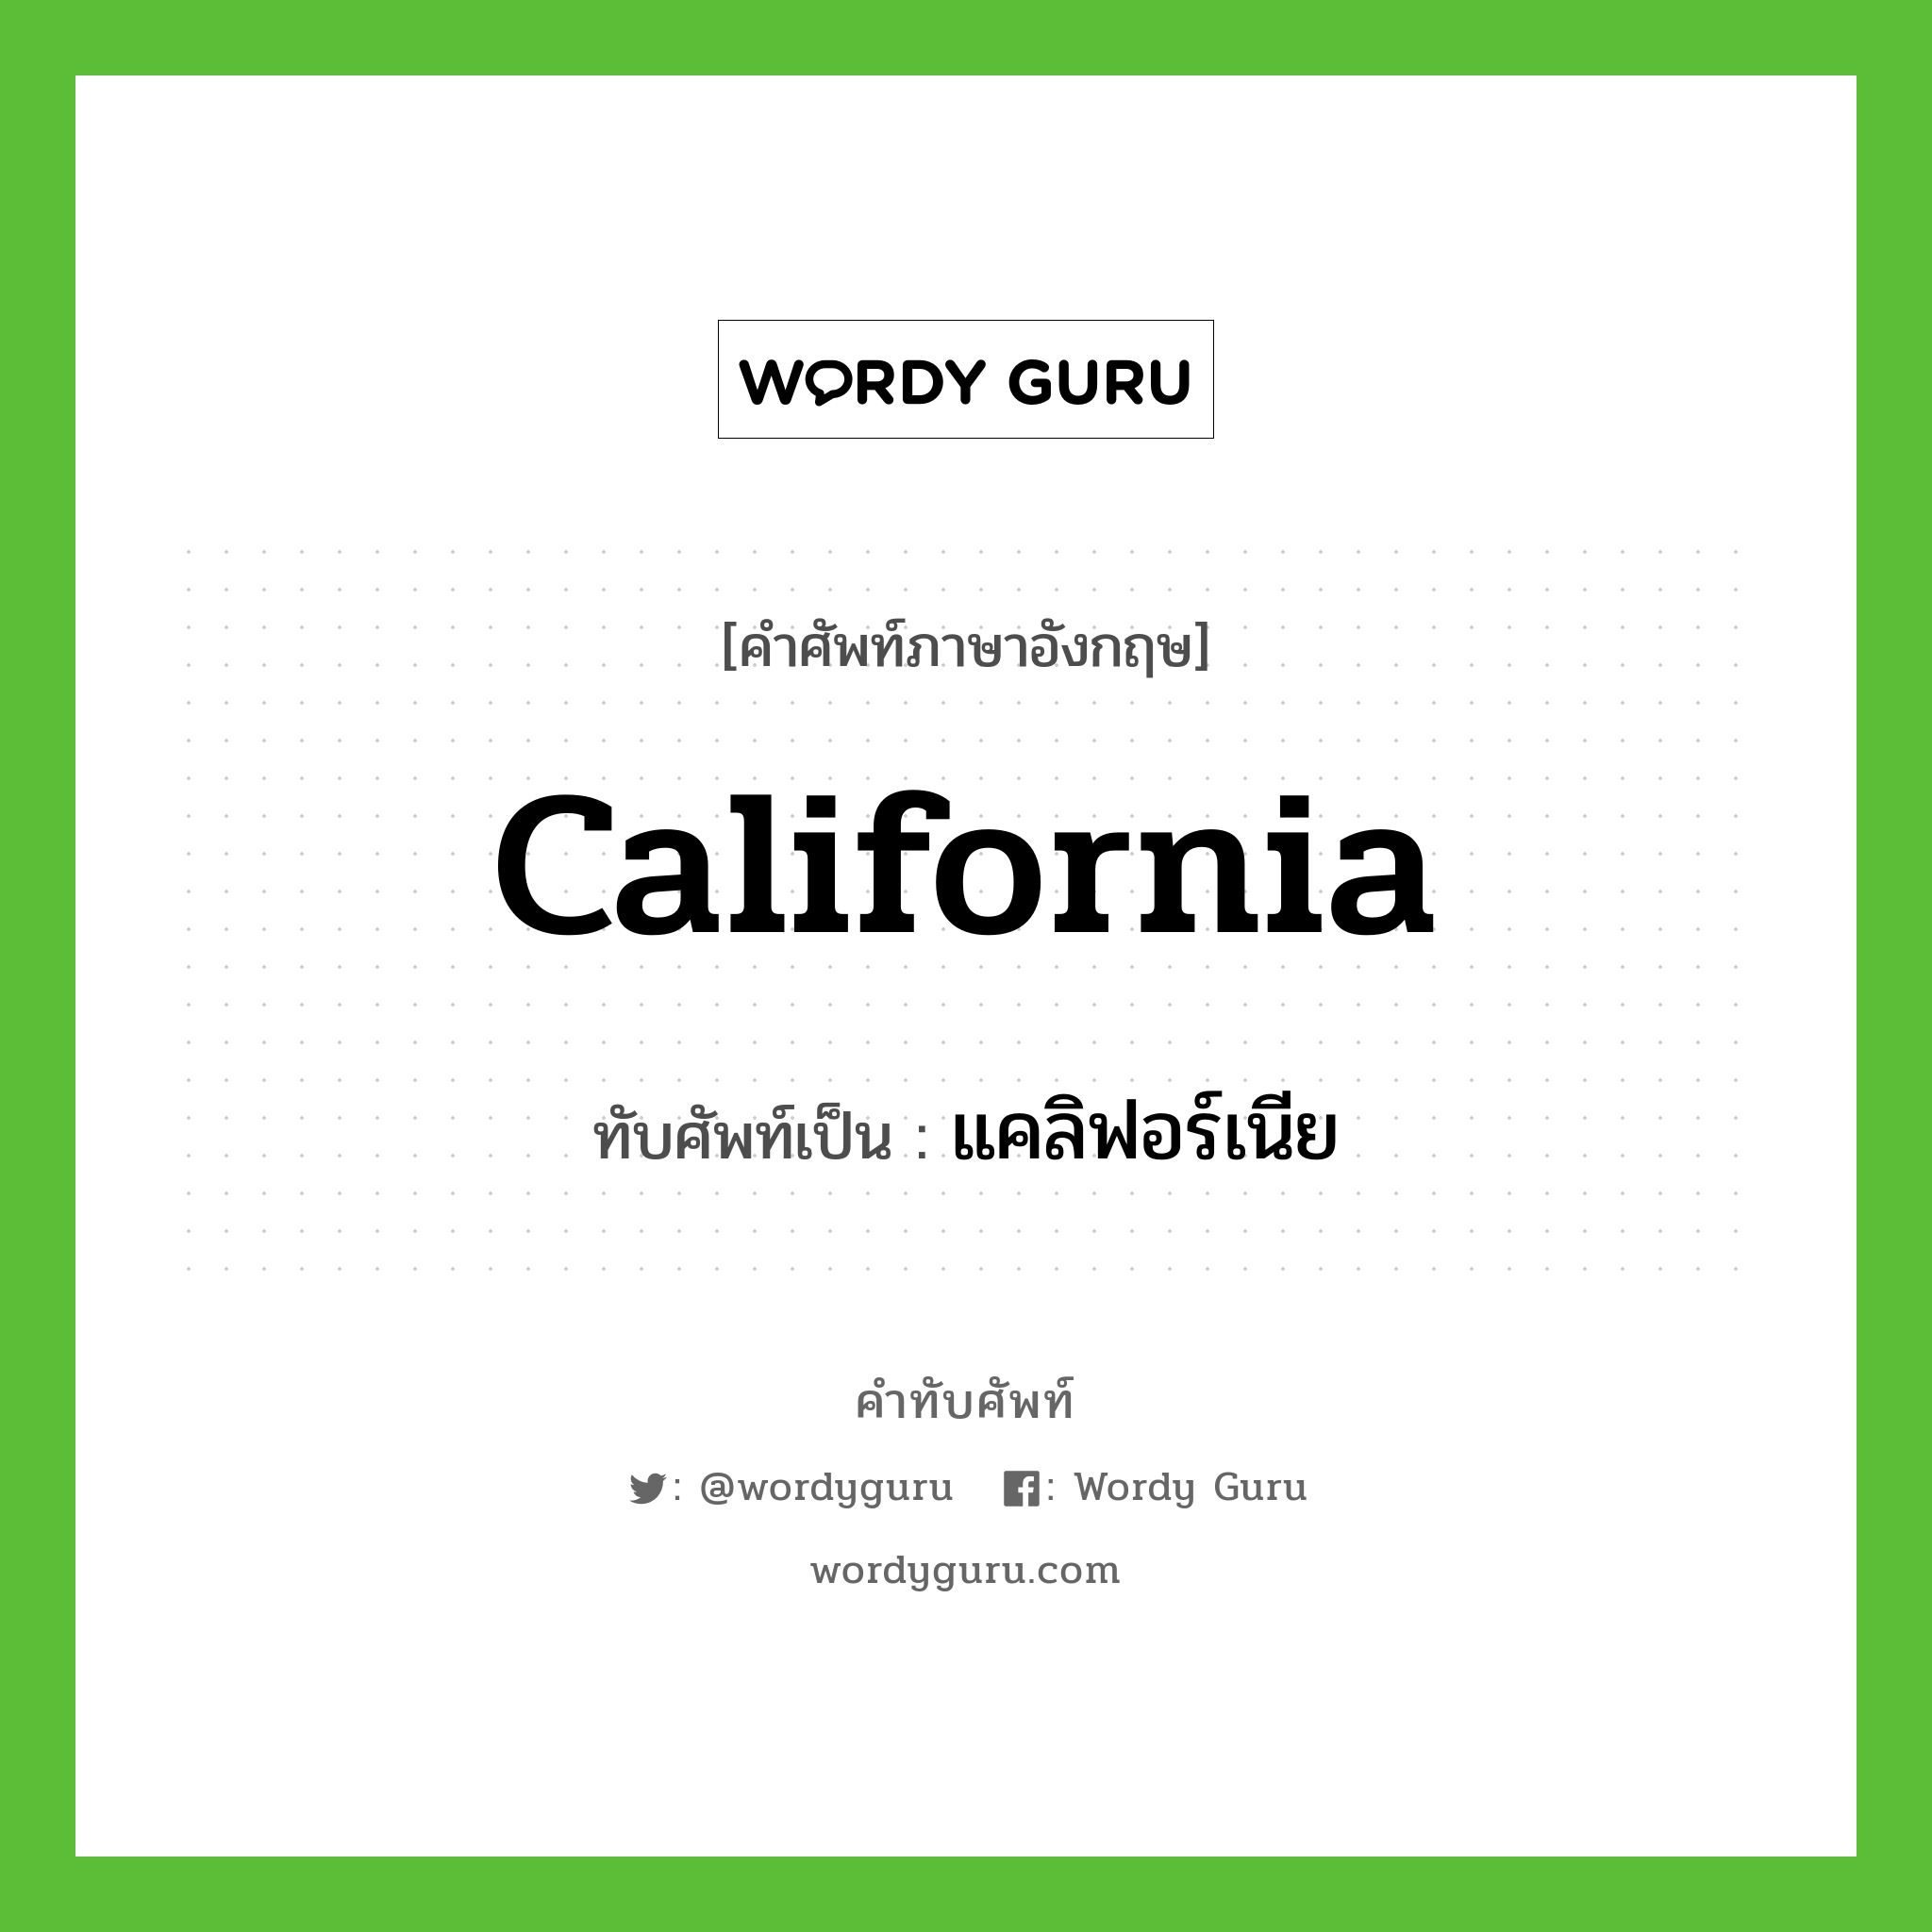 California เขียนเป็นคำไทยว่าอะไร?, คำศัพท์ภาษาอังกฤษ California ทับศัพท์เป็น แคลิฟอร์เนีย